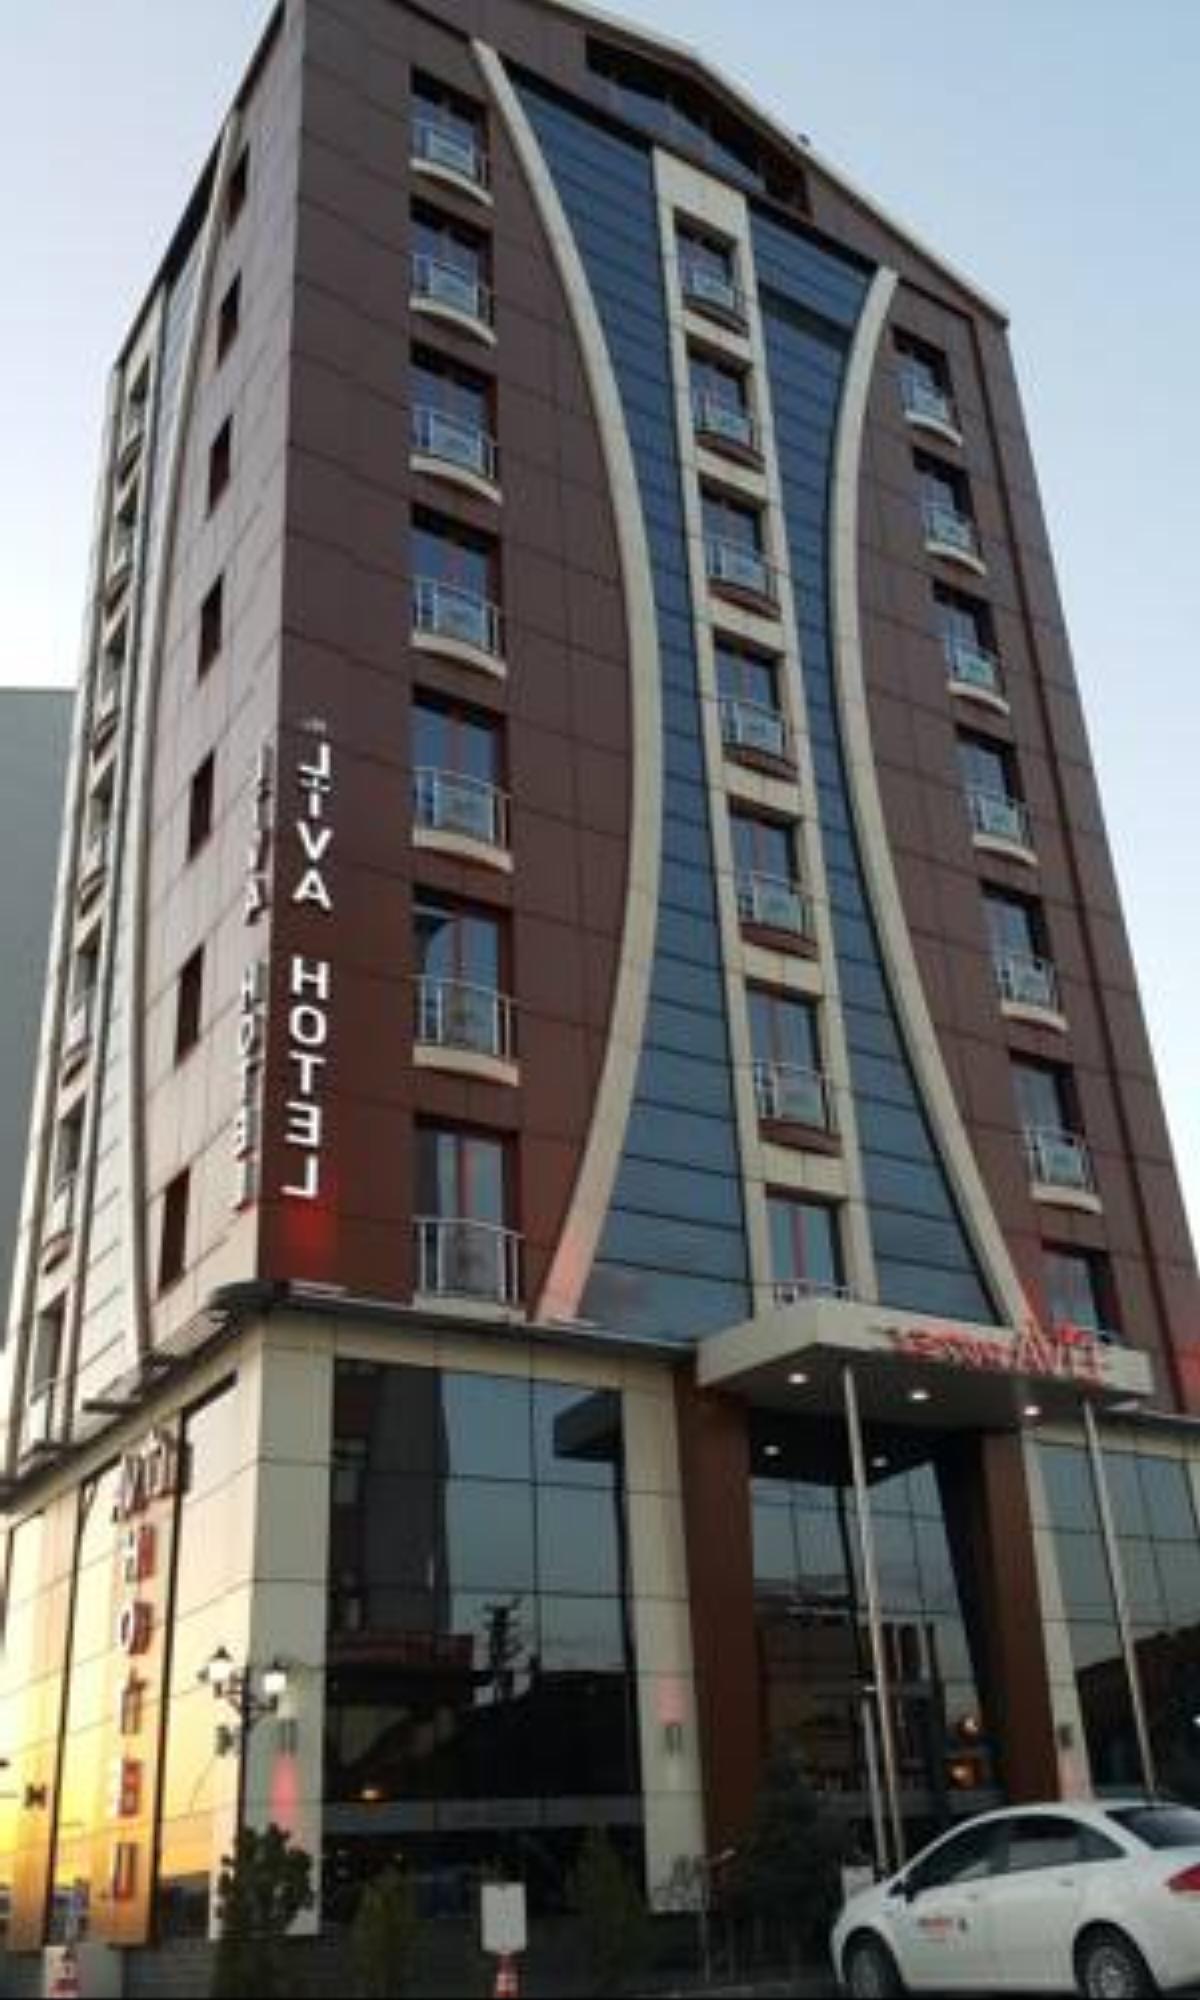 My Liva Hotel Hotel Kayseri Turkey